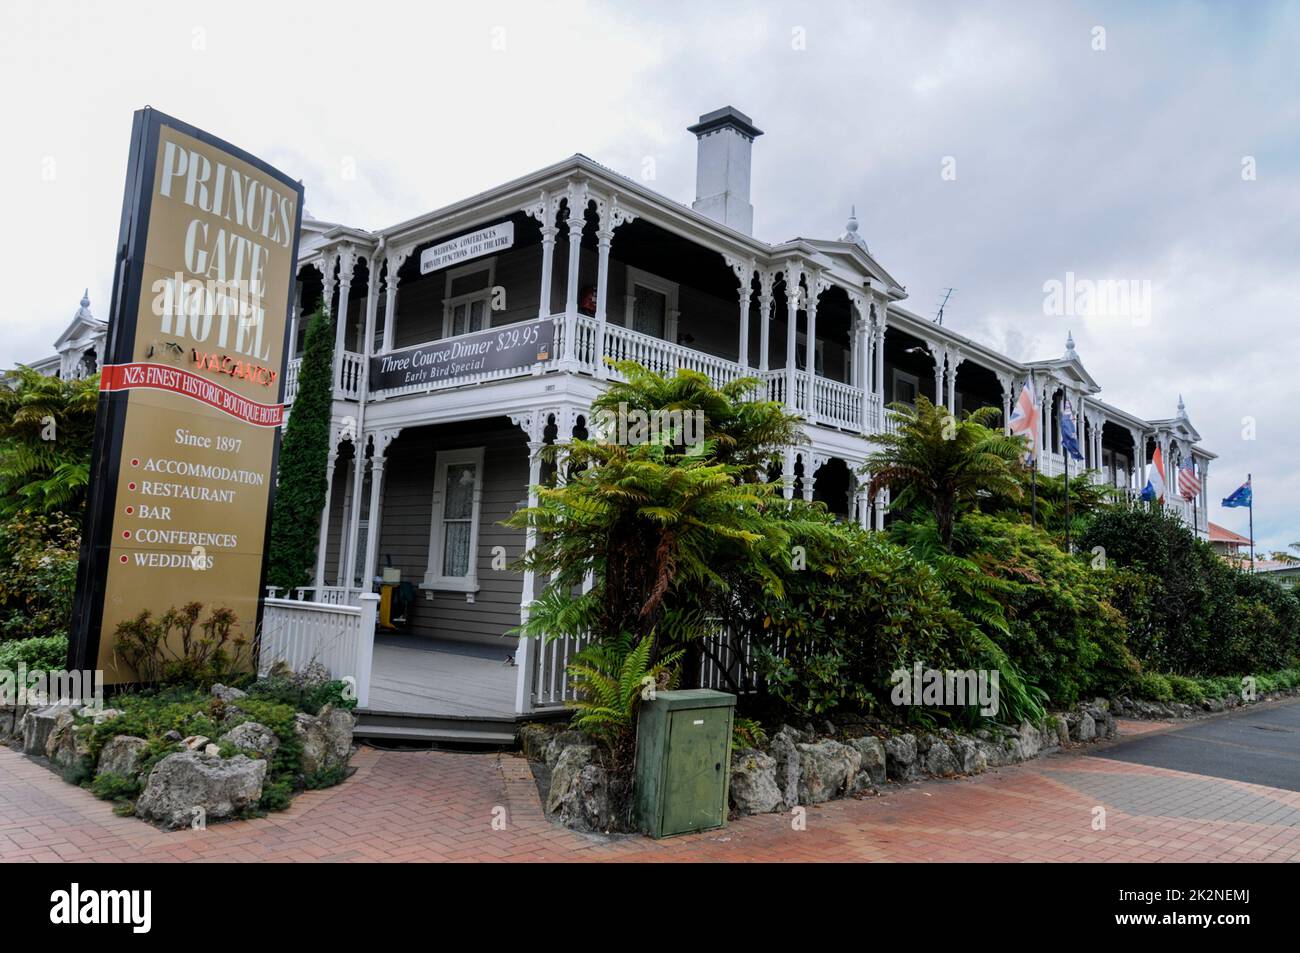 El Princes Gate Hotel, construido en 1897, fue el primer hotel privado de Nueva Zelanda en Rotorua, una ciudad a orillas del lago Rotorua en Nor de Nueva Zelanda Foto de stock